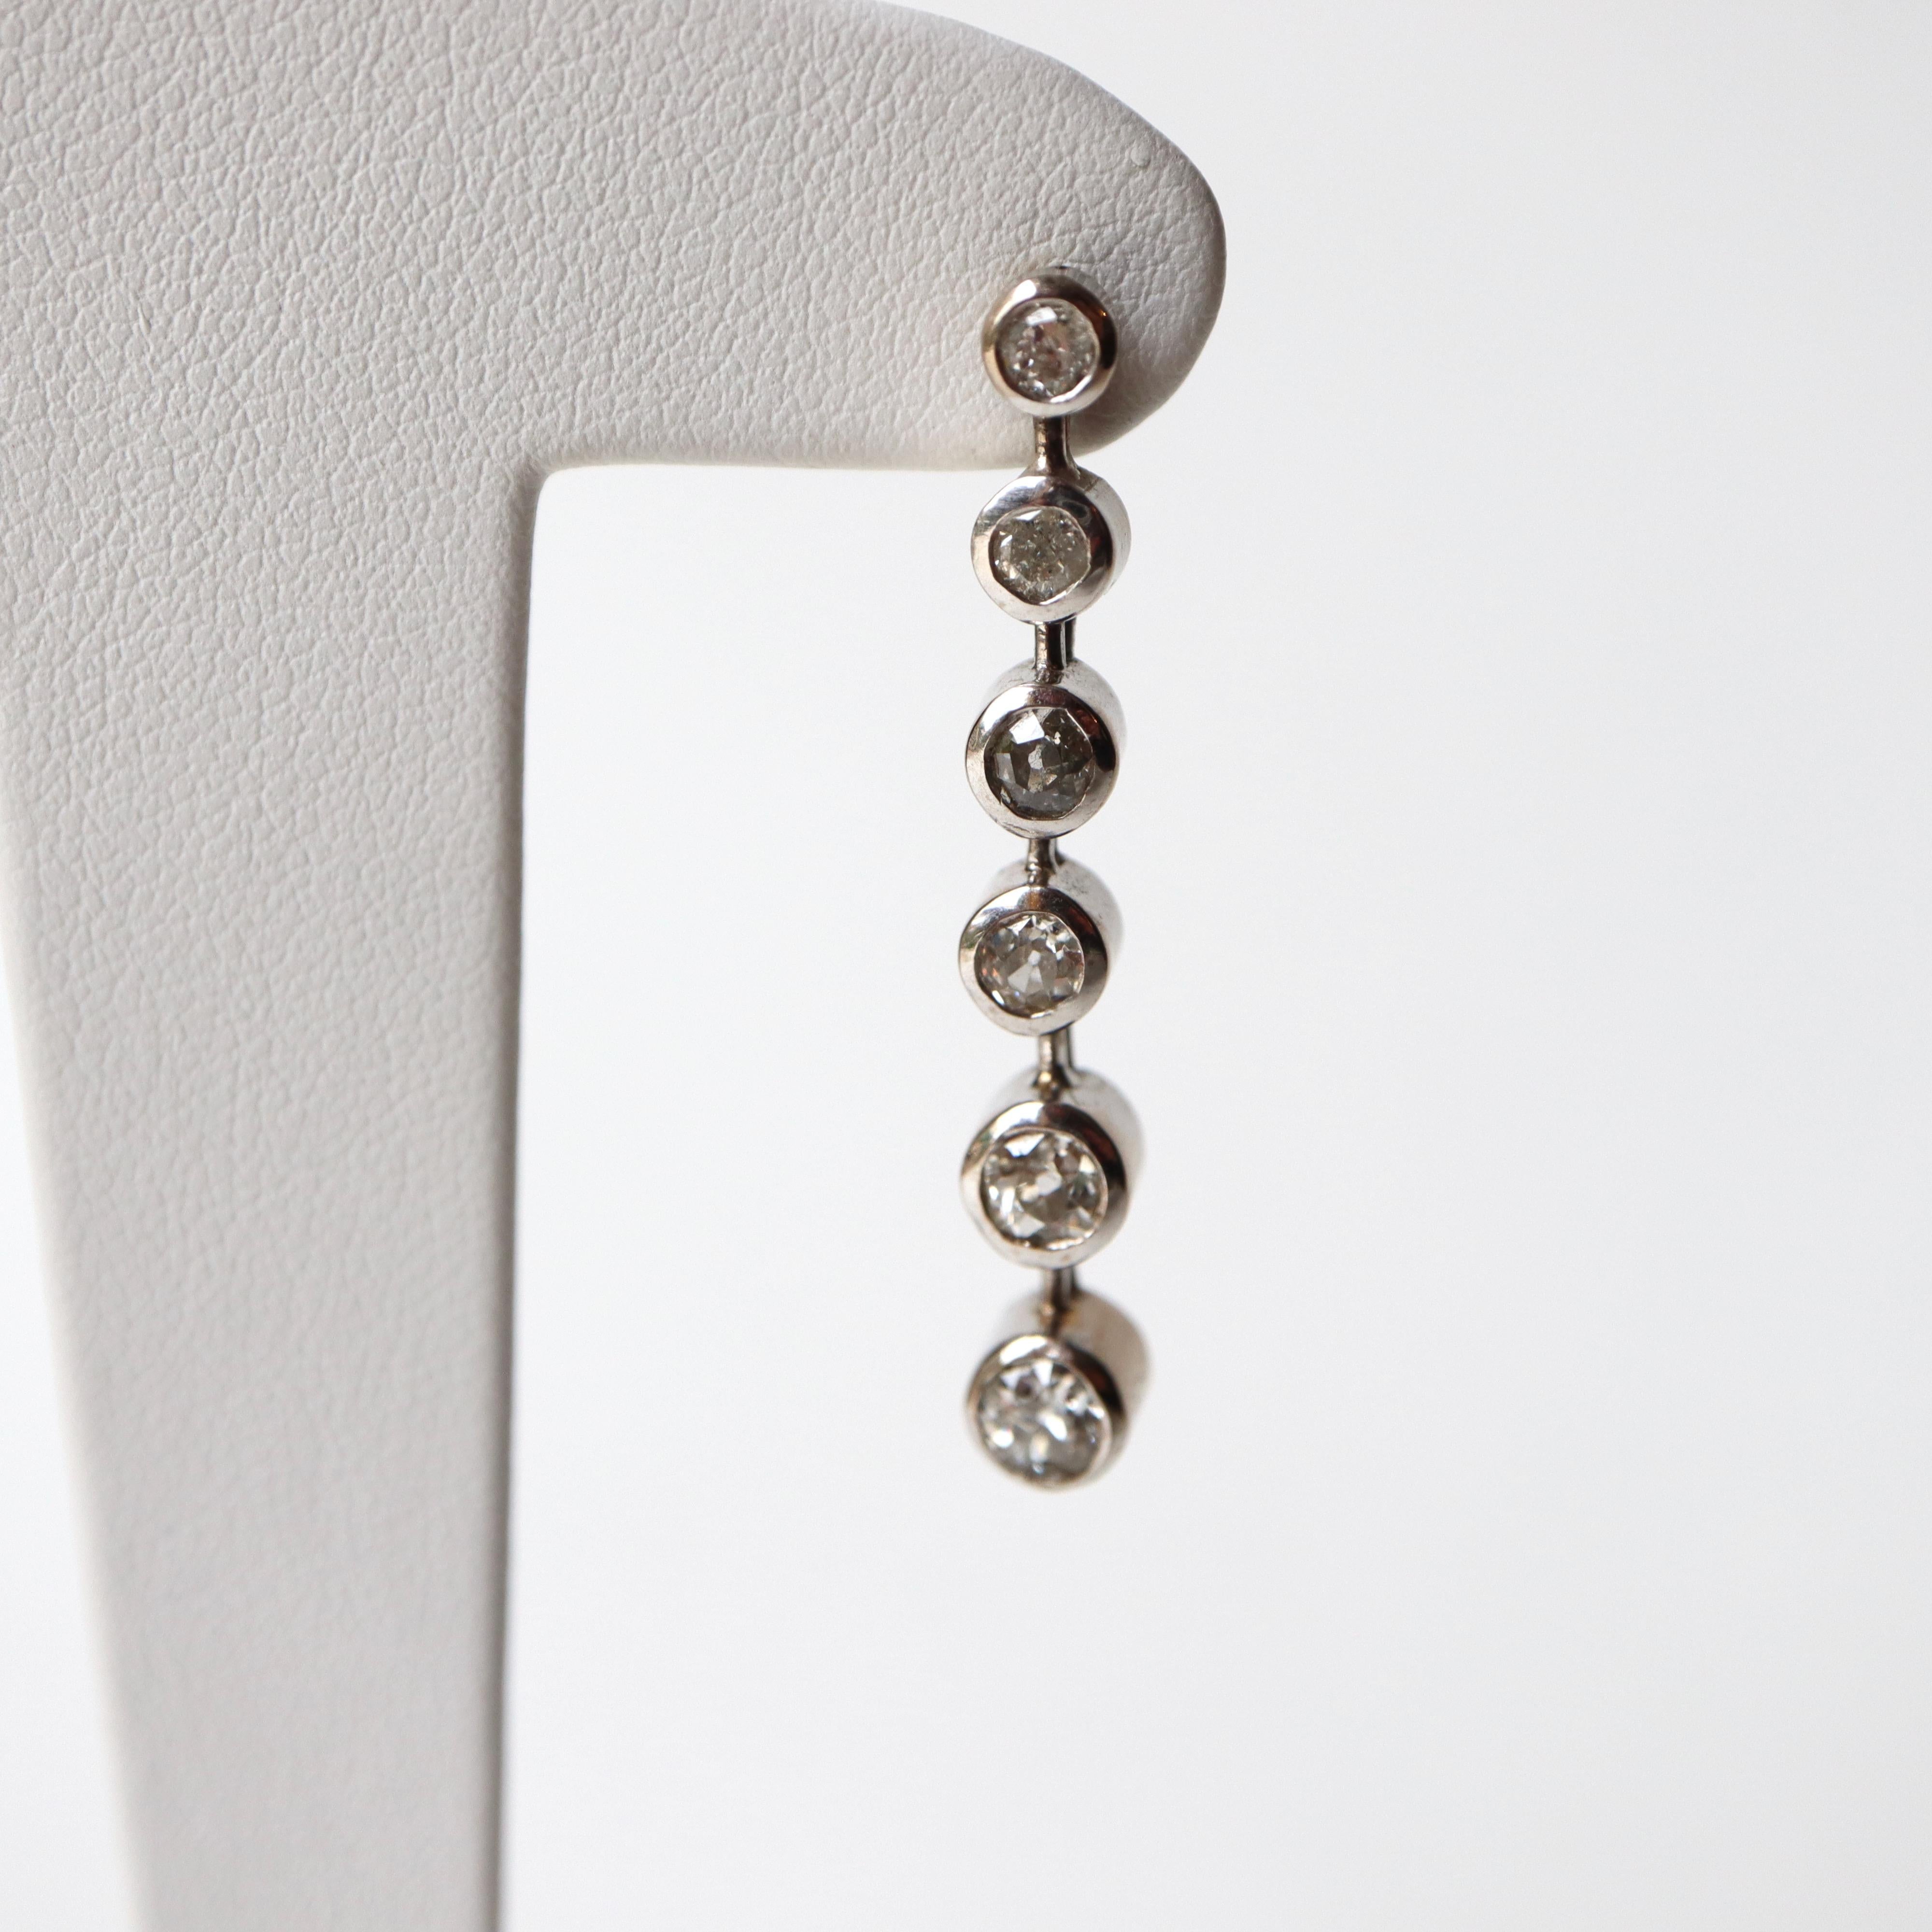 Boucles d'oreilles pendantes en or blanc 18 carats et diamants
Chaque boucle d'oreille contient 6 diamants sertis en chaton de tailles et de qualités différentes, pour un poids total d'environ 1 carat de diamants par boucle d'oreille. Poids total